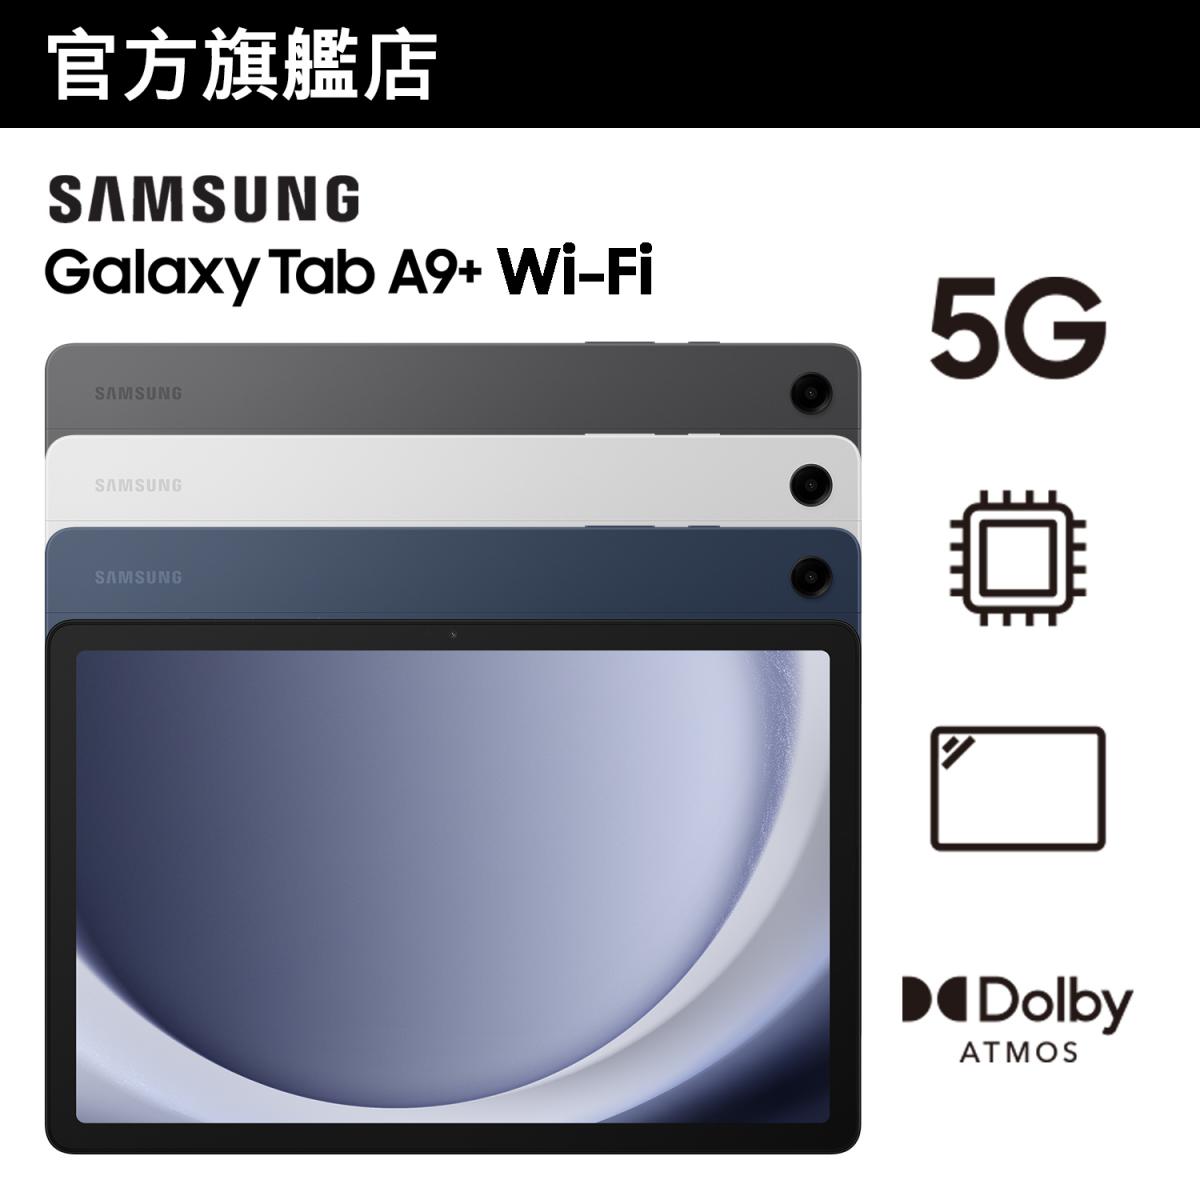 Galaxy Tab A9+ 流動平板 (Wi-Fi)